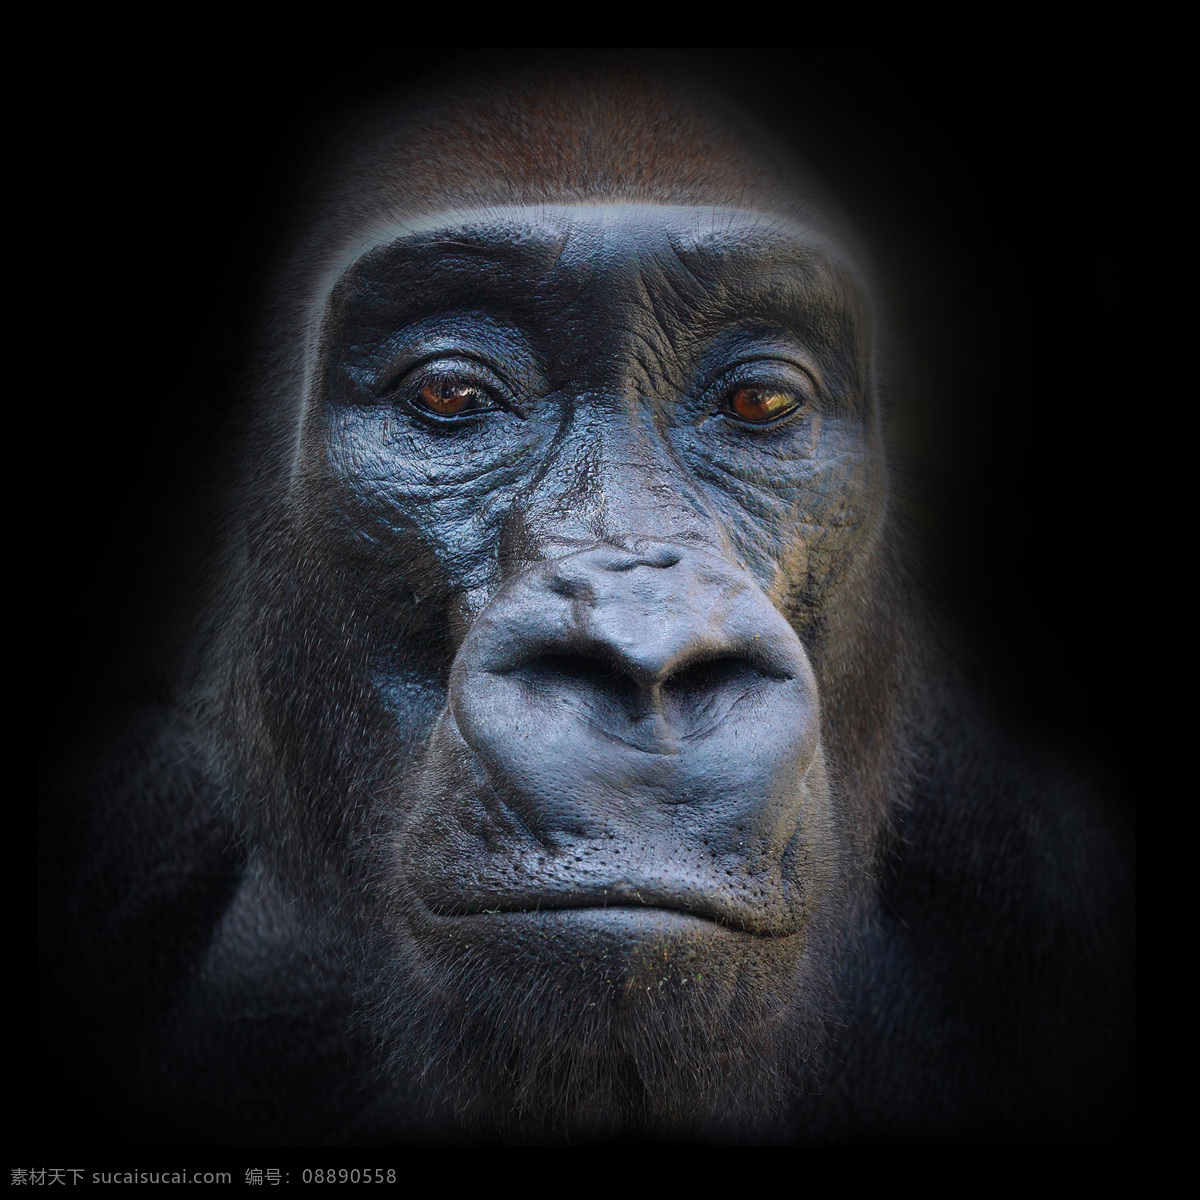 猩猩 头部 图 类人猿 动物 野生动物 动物世界 陆地动物 动物摄影 生物世界